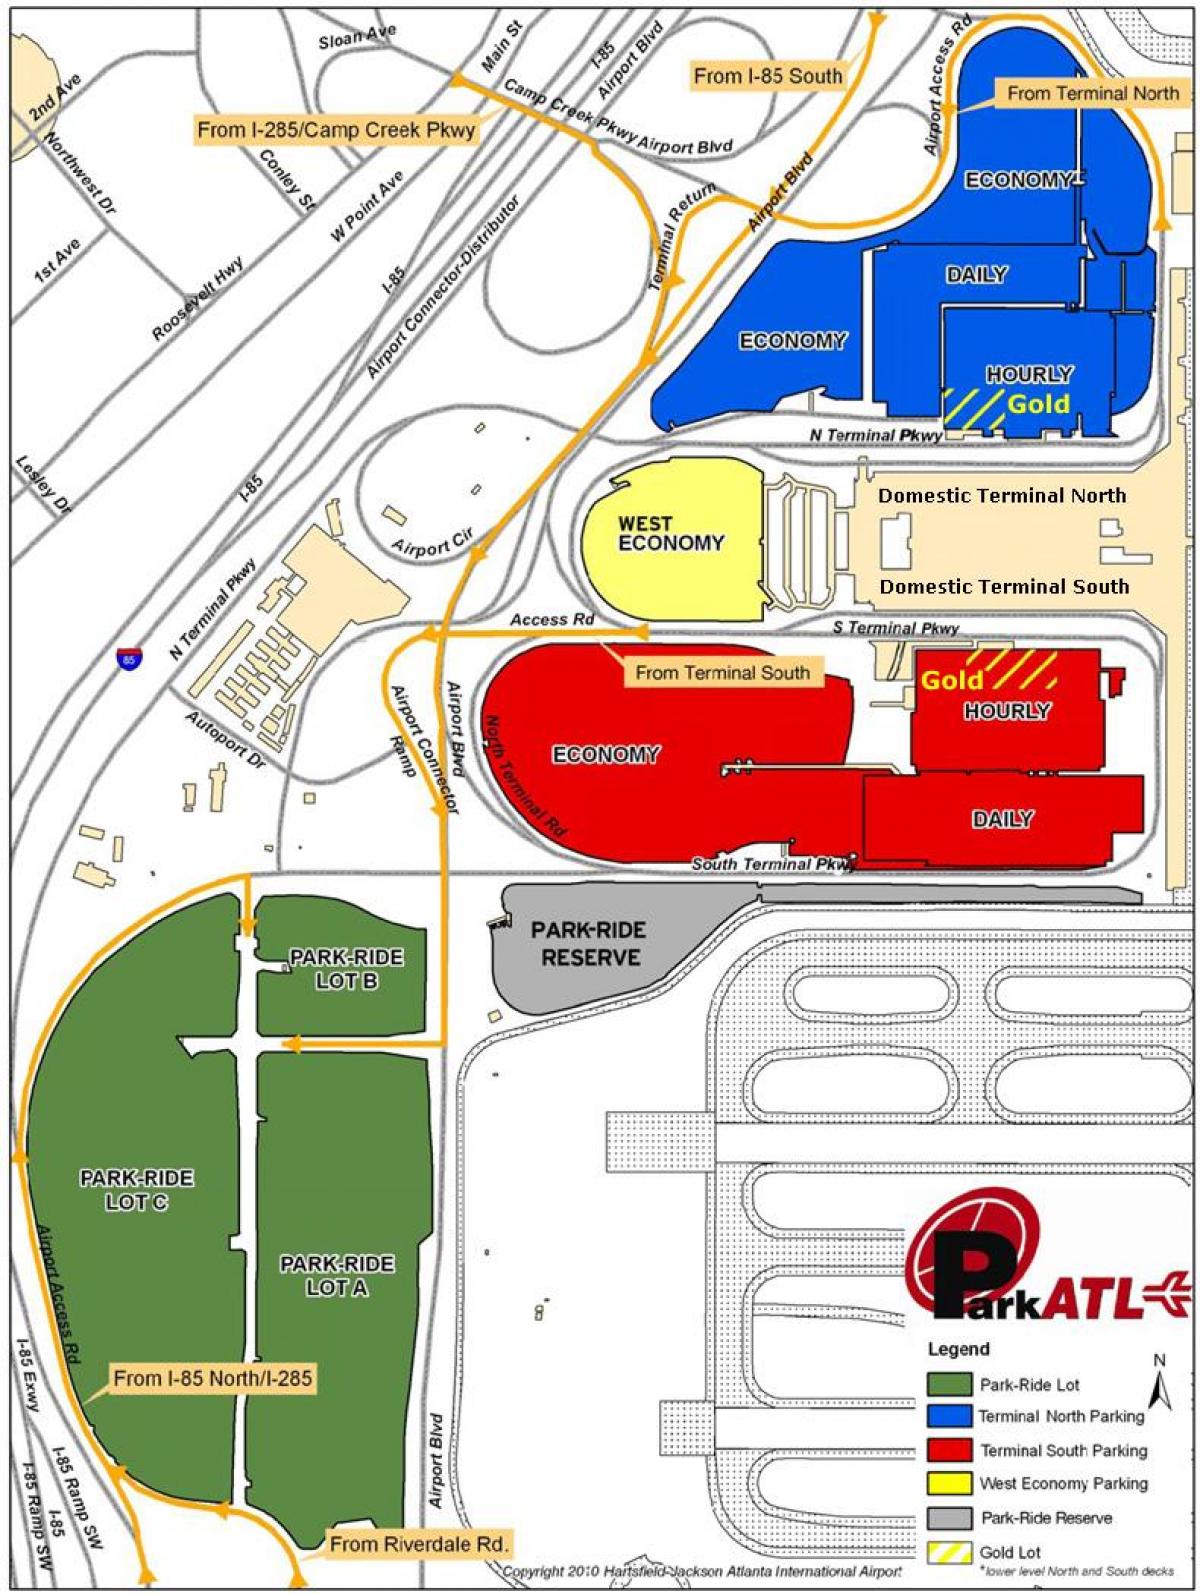 अटलांटा Hartsfield हवाई अड्डे के पार्किंग का नक्शा